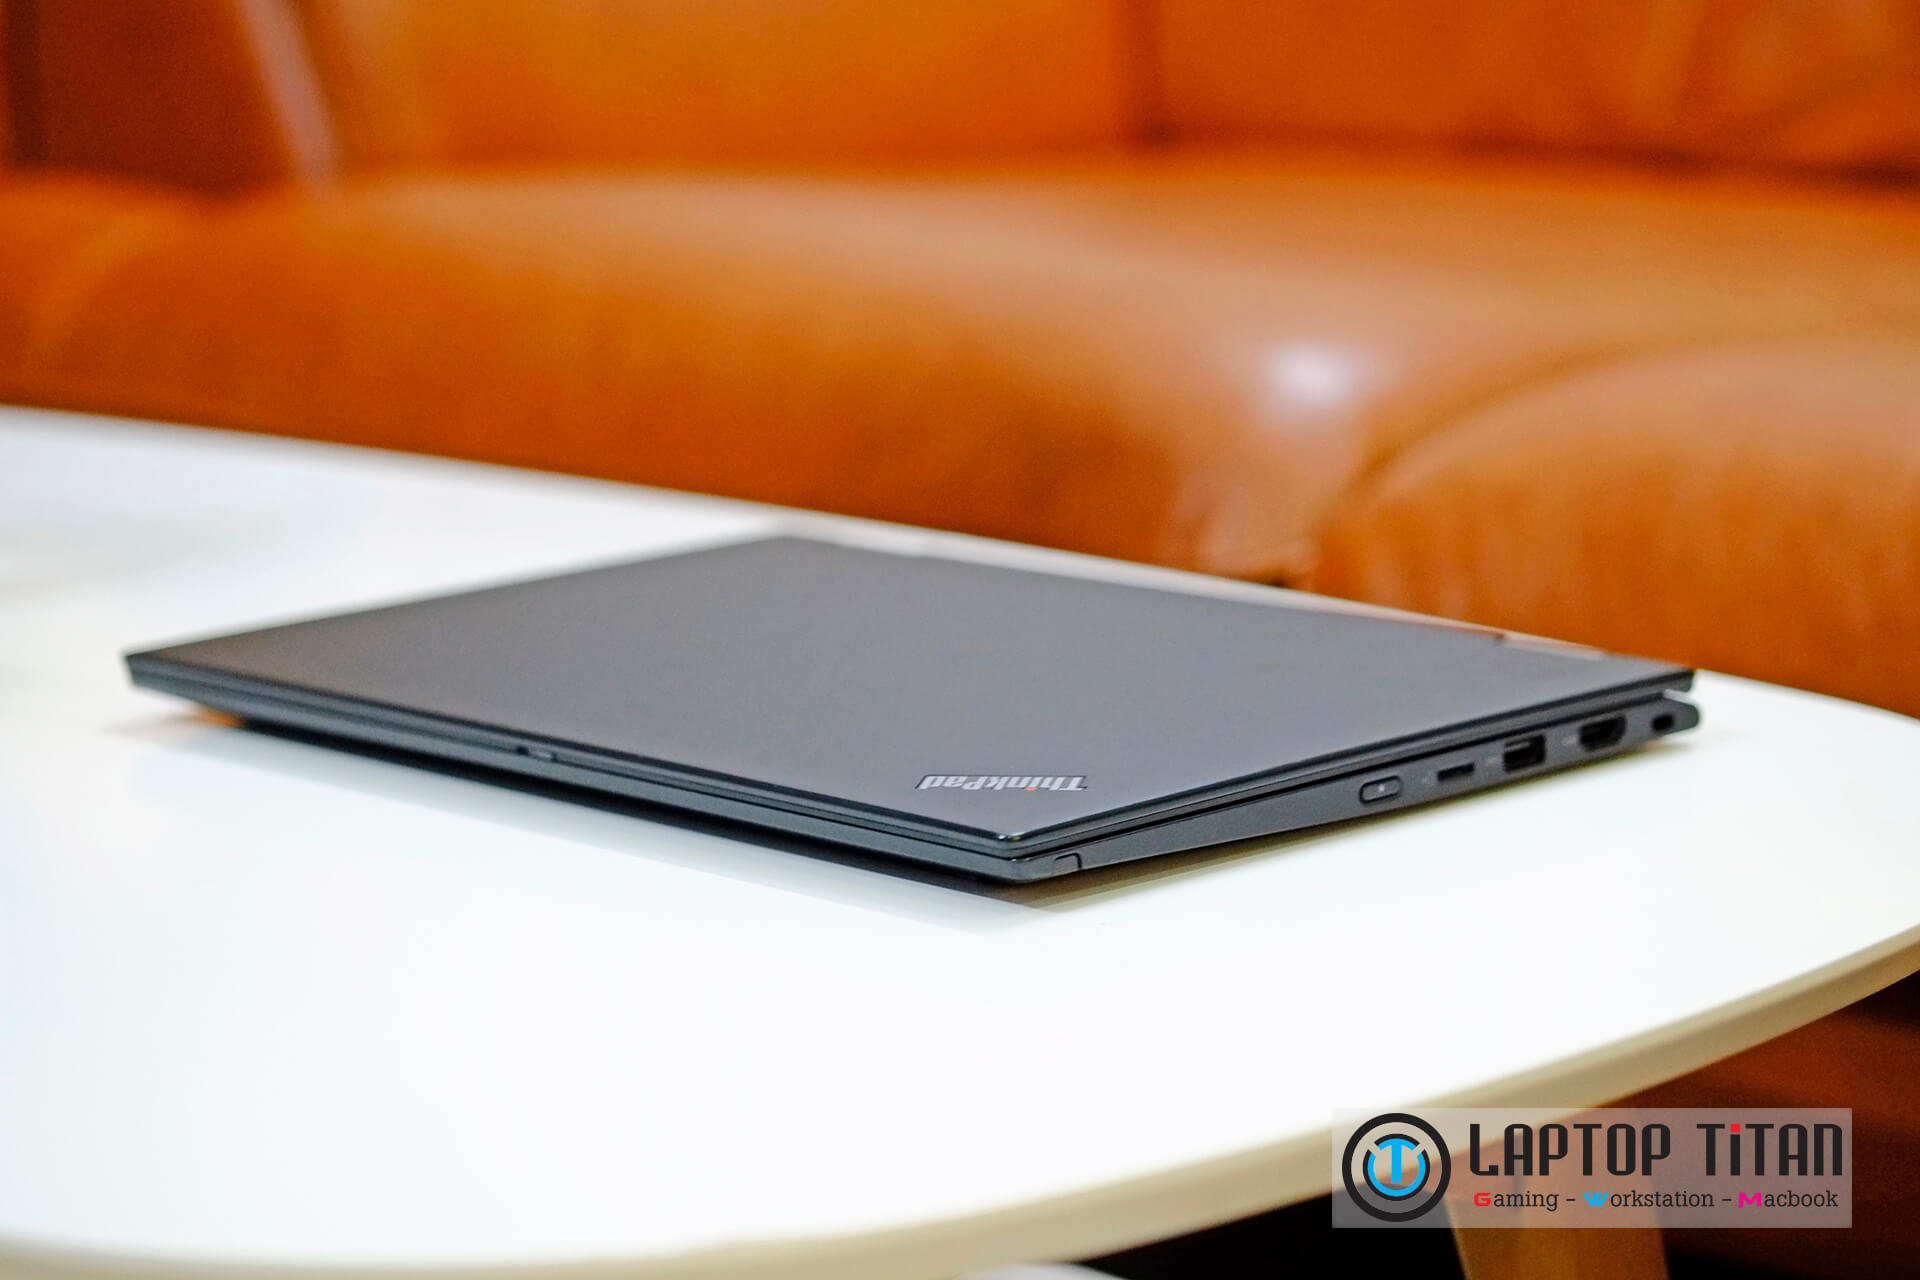 Lenovo Thinkpad X13 Yoga Laptoptitan 02